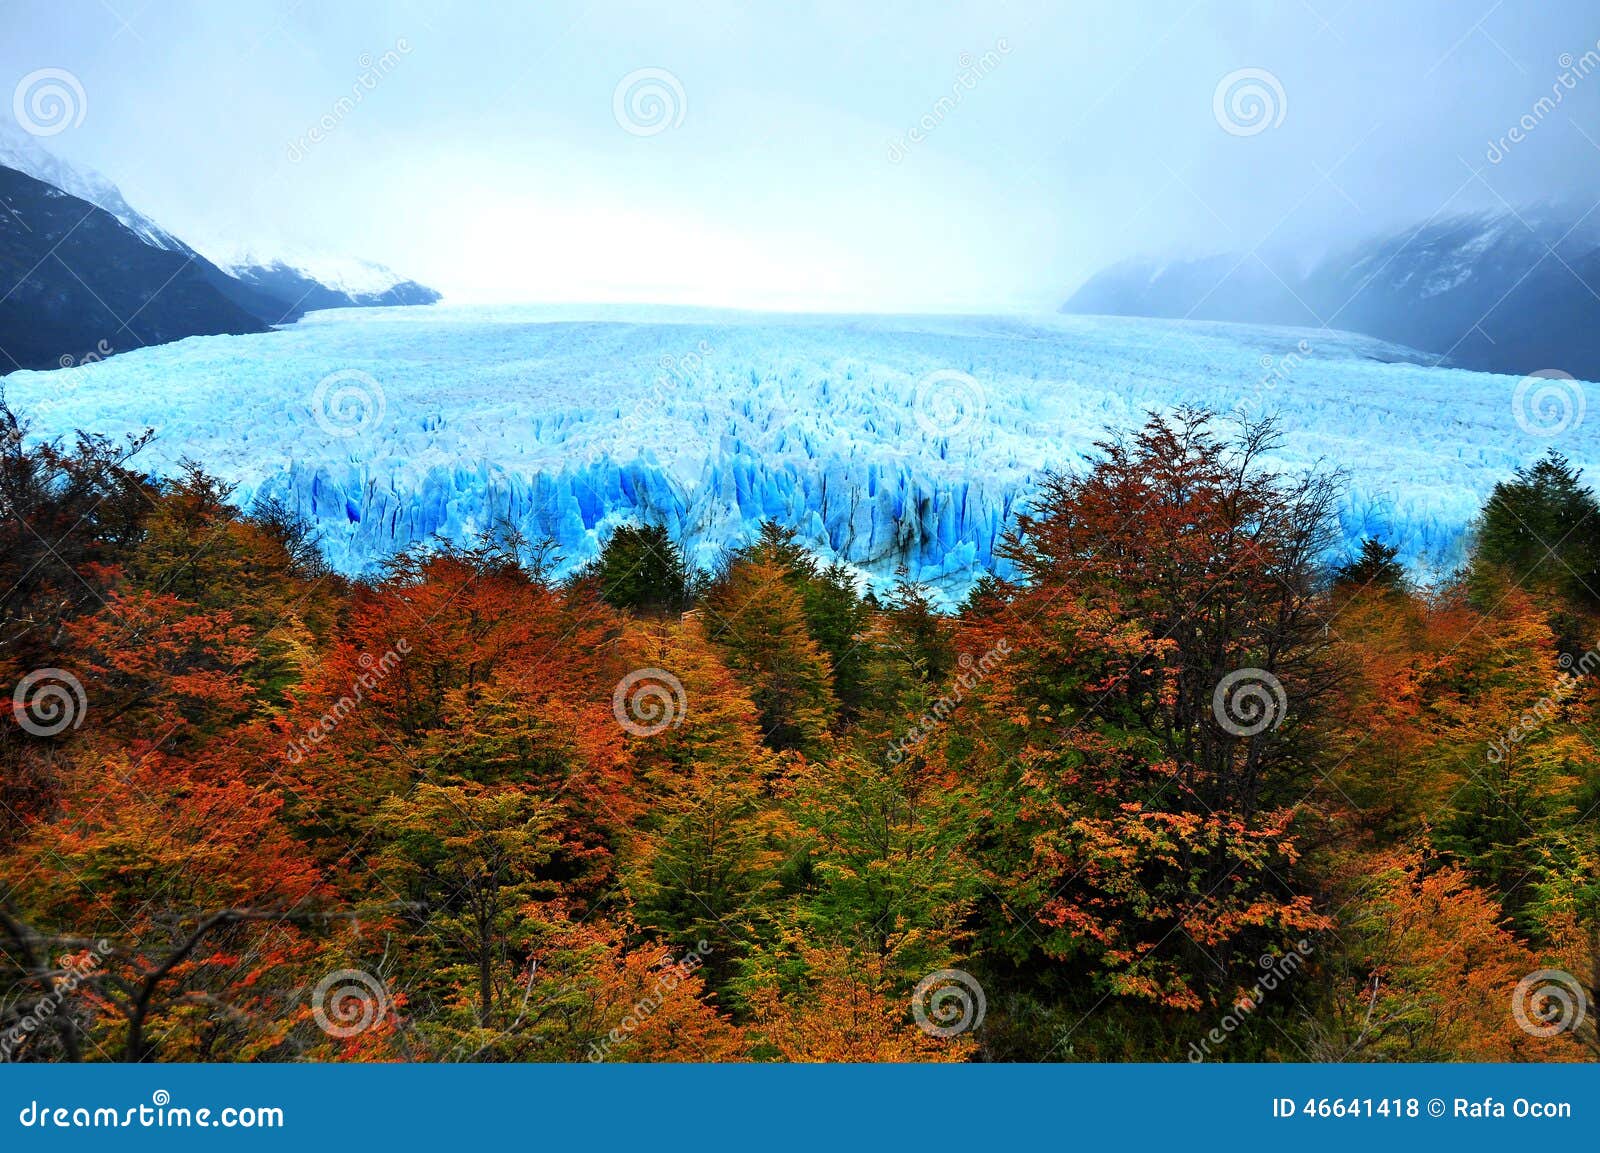 perito moreno glacier in the argentinean patagonia